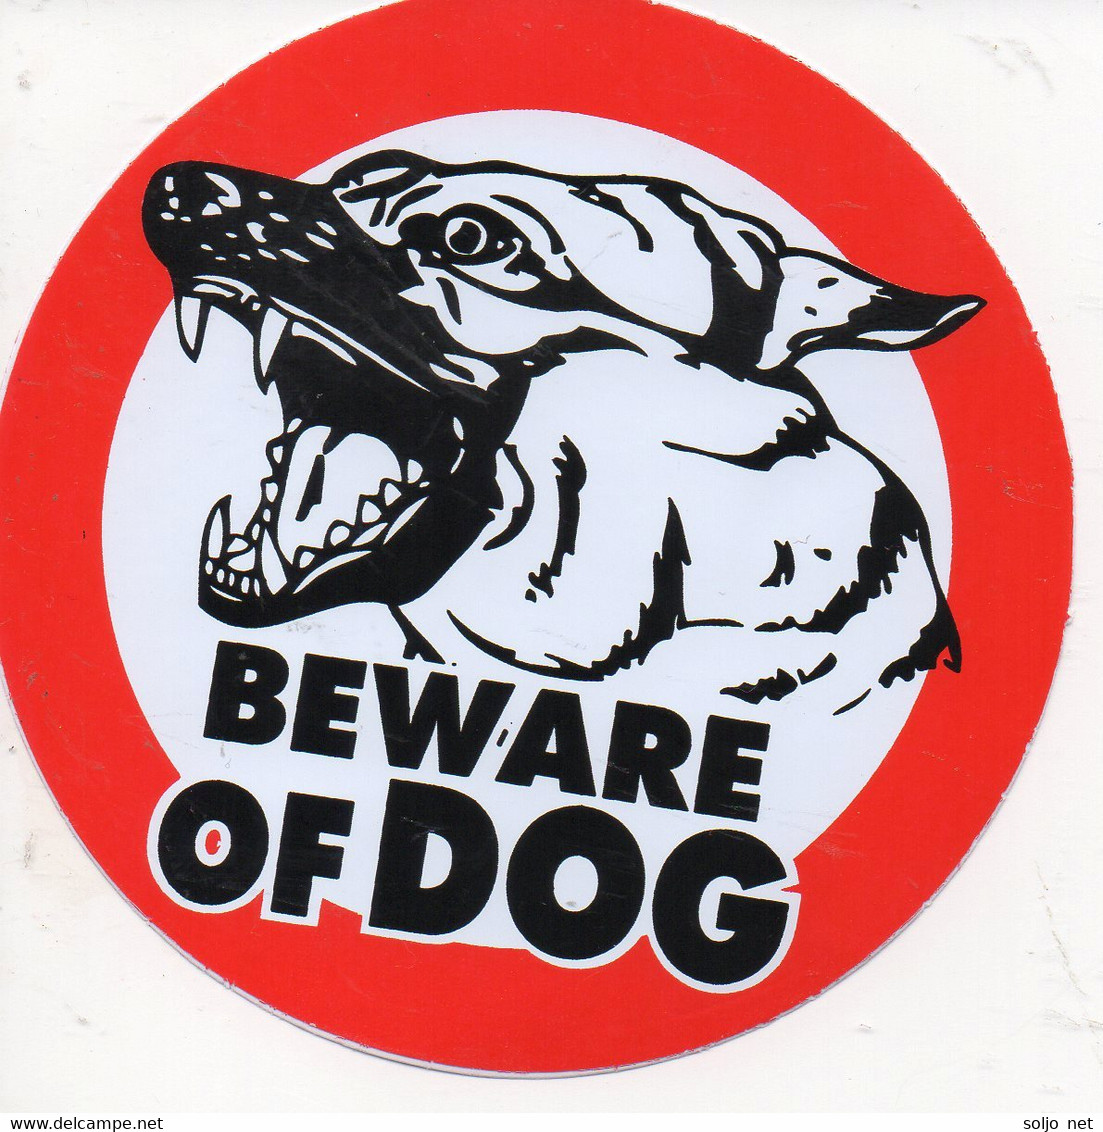 Scrapbooking - Verboten - Vorsicht gefährlicher Hund rund 10 cm